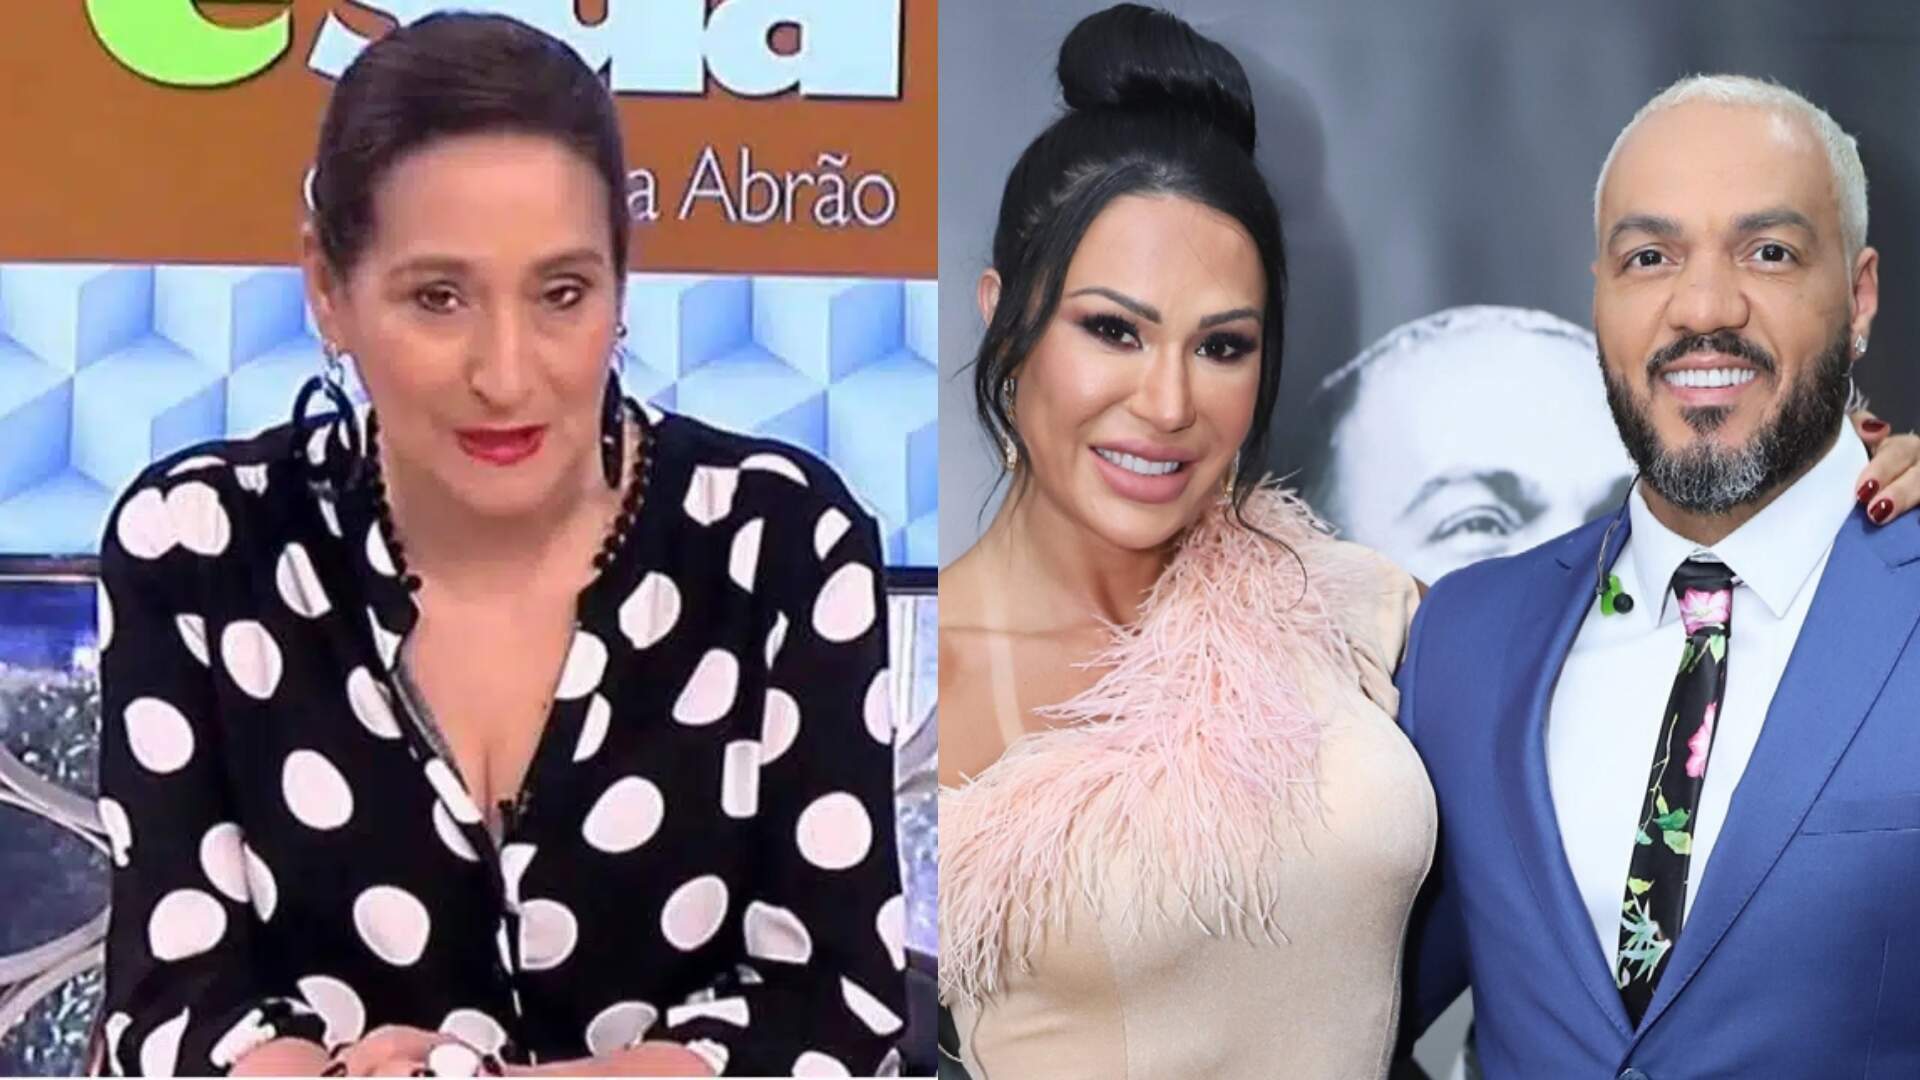 Ao vivo, Sonia Abrão expõe toda a farsa envolvendo o divórcio entre Belo e Gracyanne - Metropolitana FM